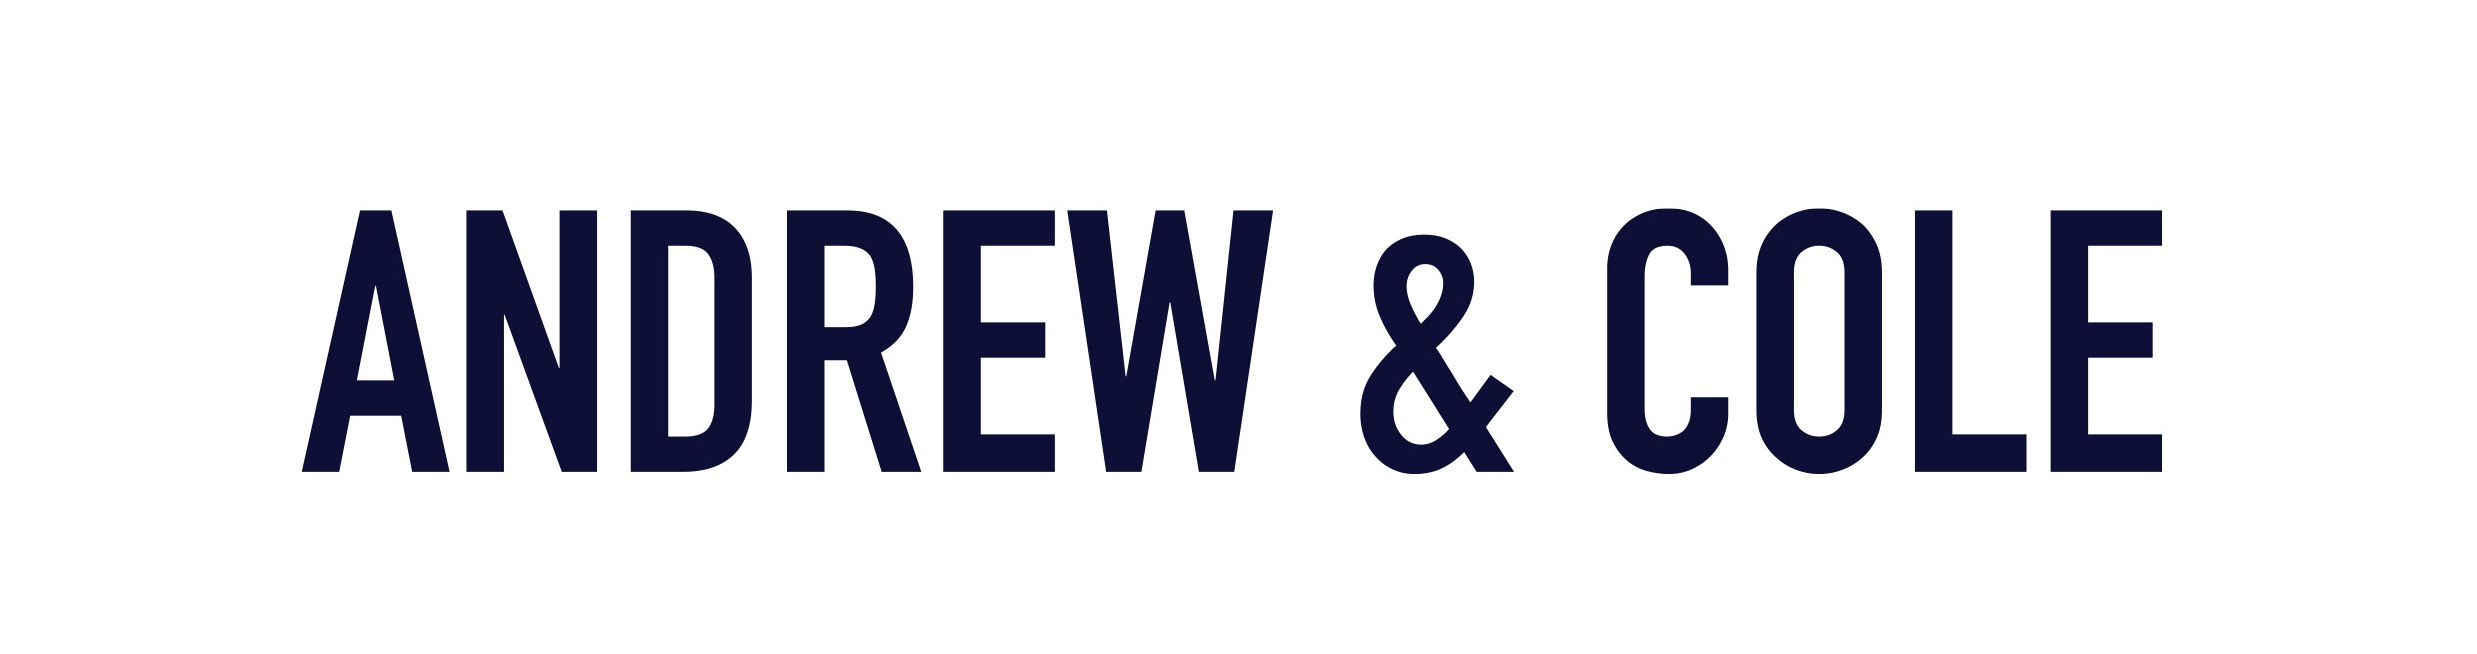 Andrew & Cole Logo